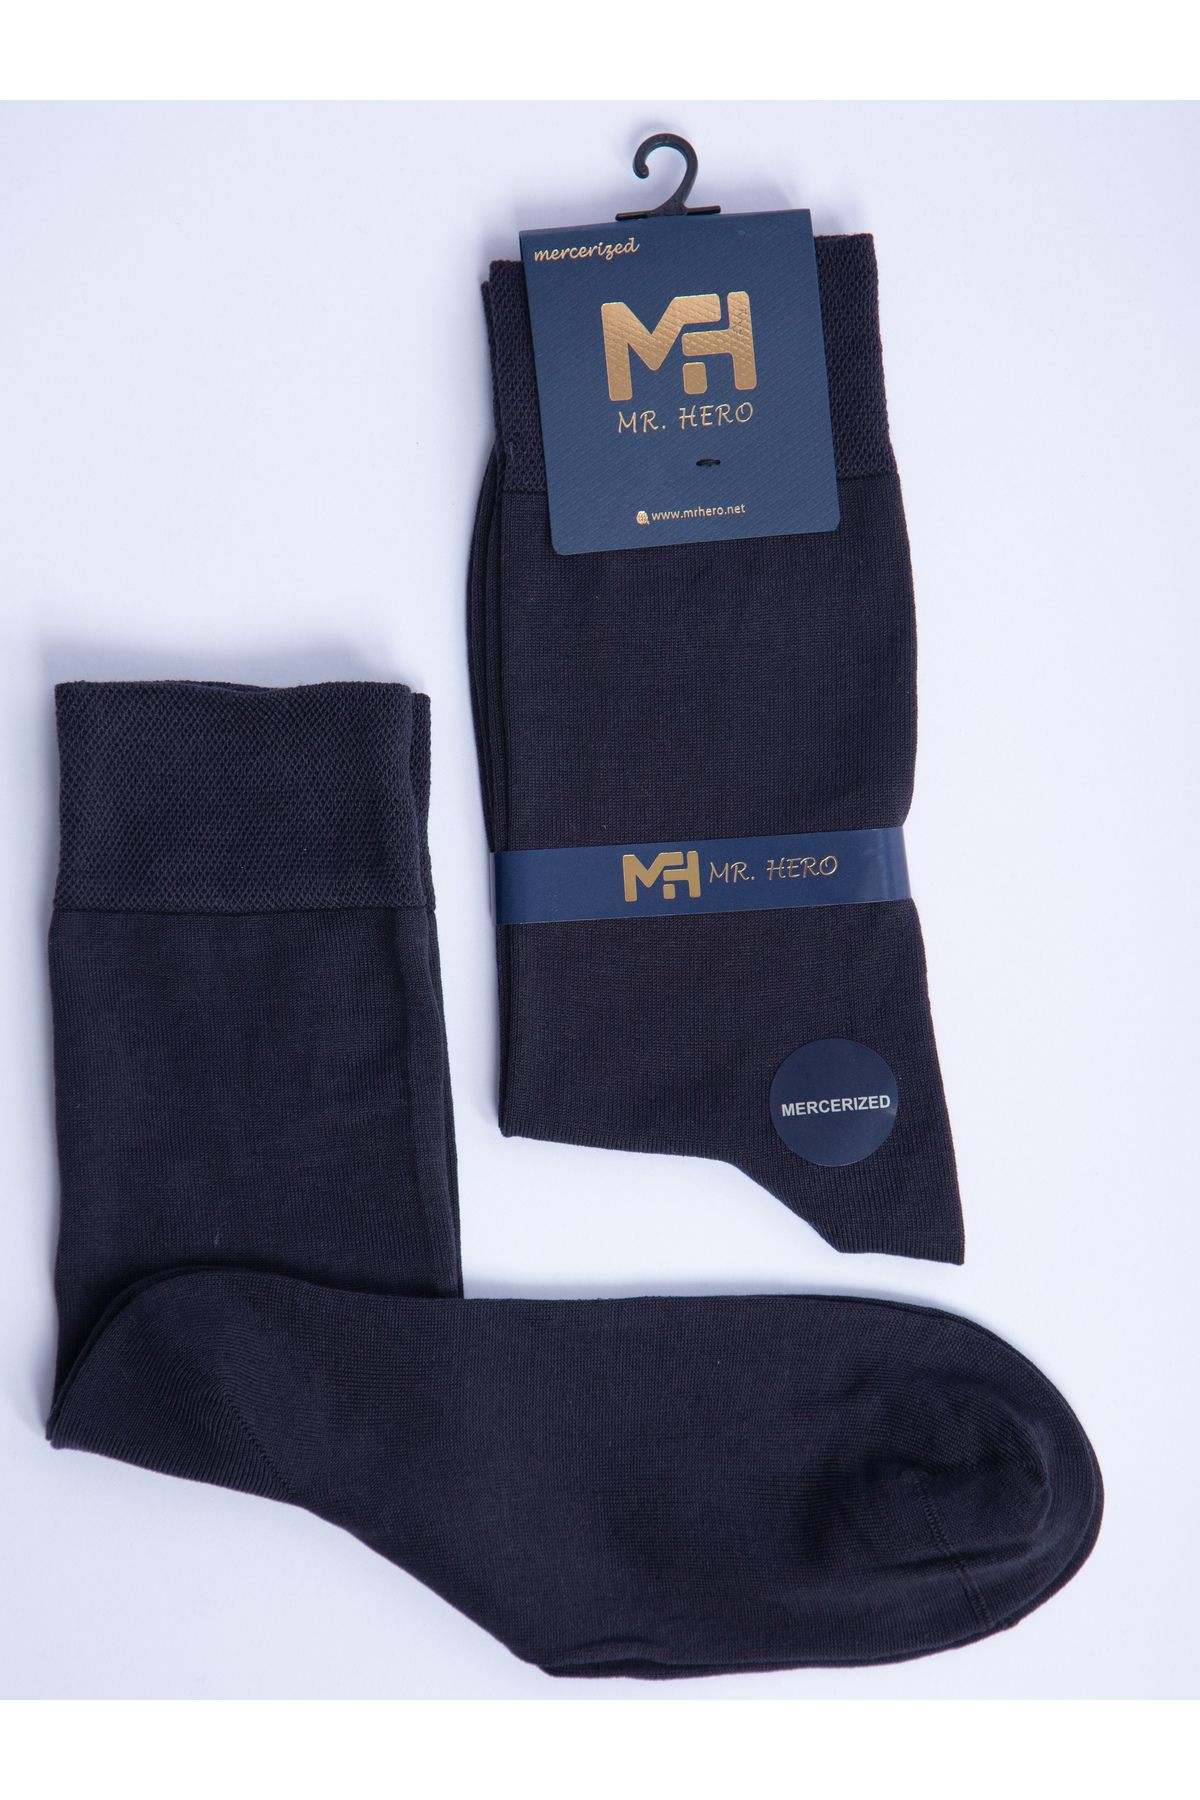 MRHERO Merserize 6'lı Antrasit Erkek Uzun Klasik Soket Çorap 1078